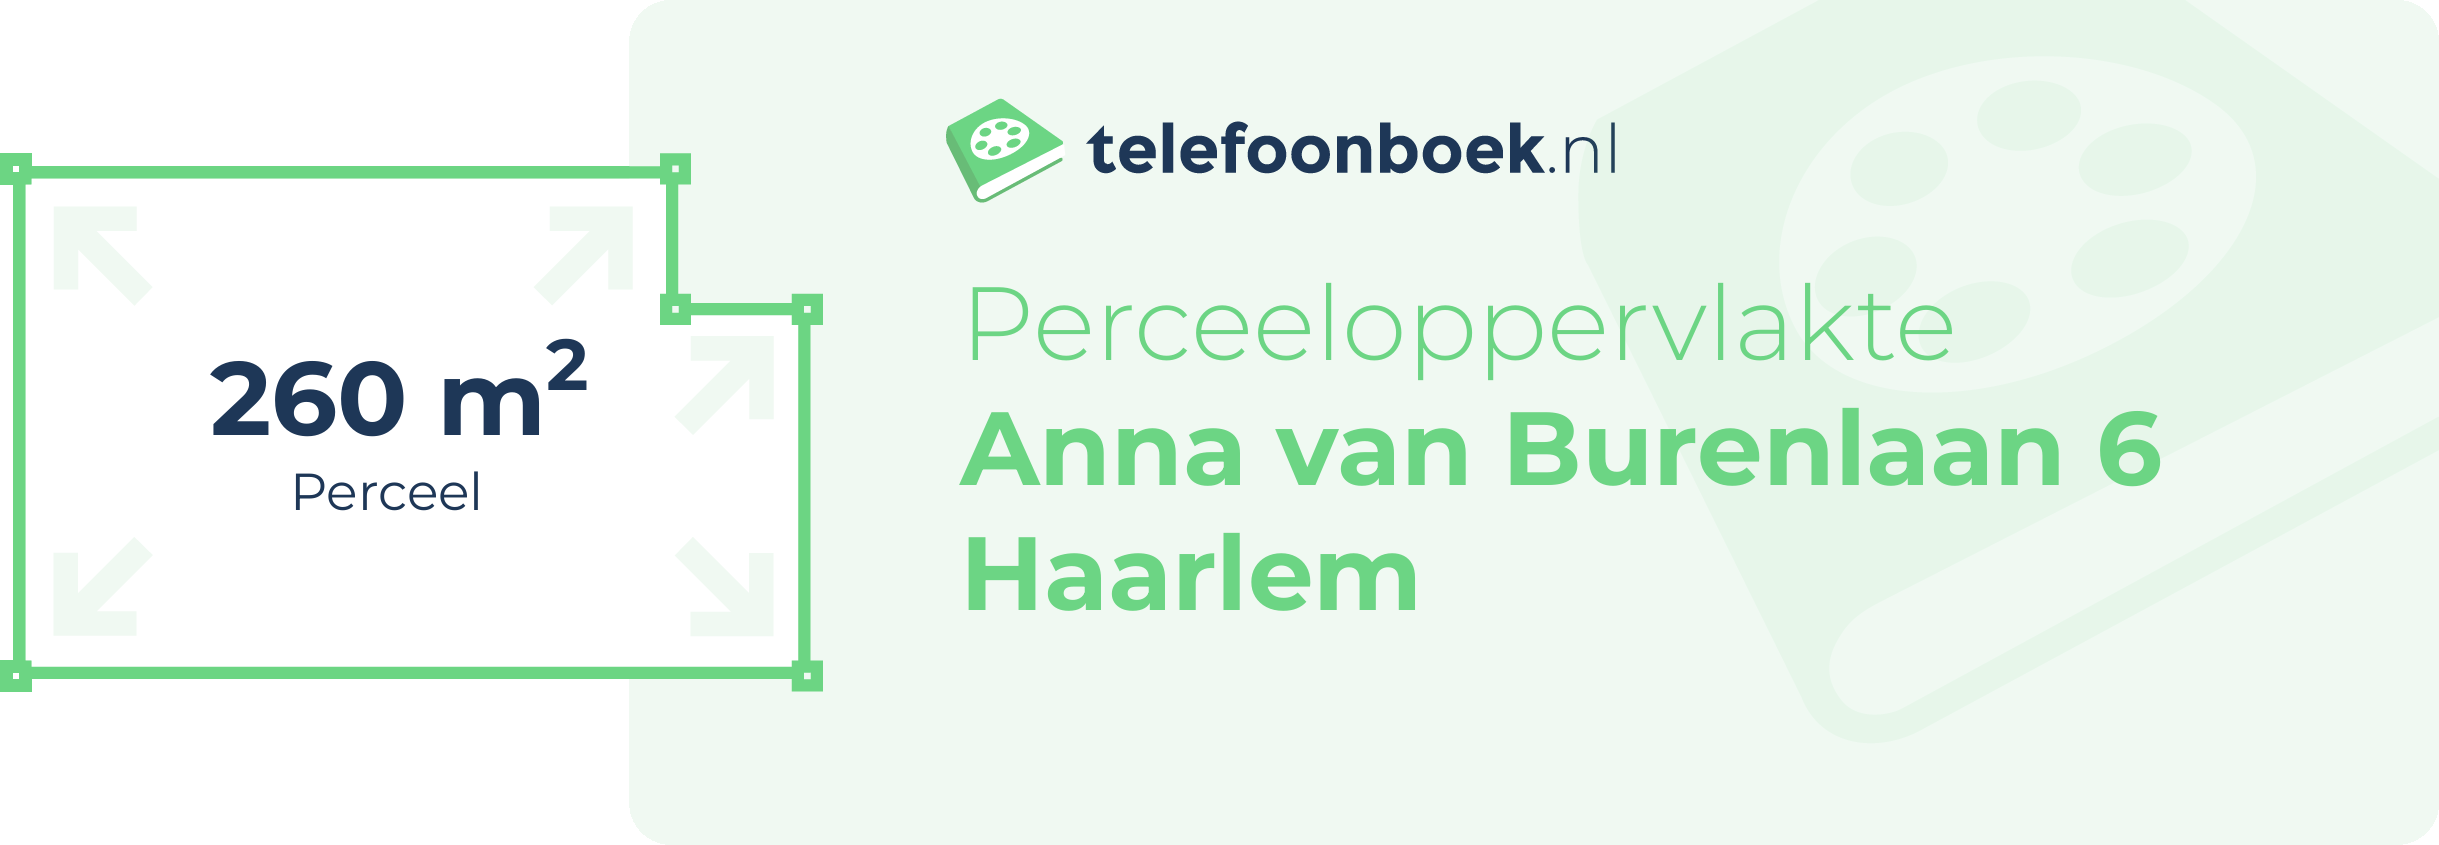 Perceeloppervlakte Anna Van Burenlaan 6 Haarlem